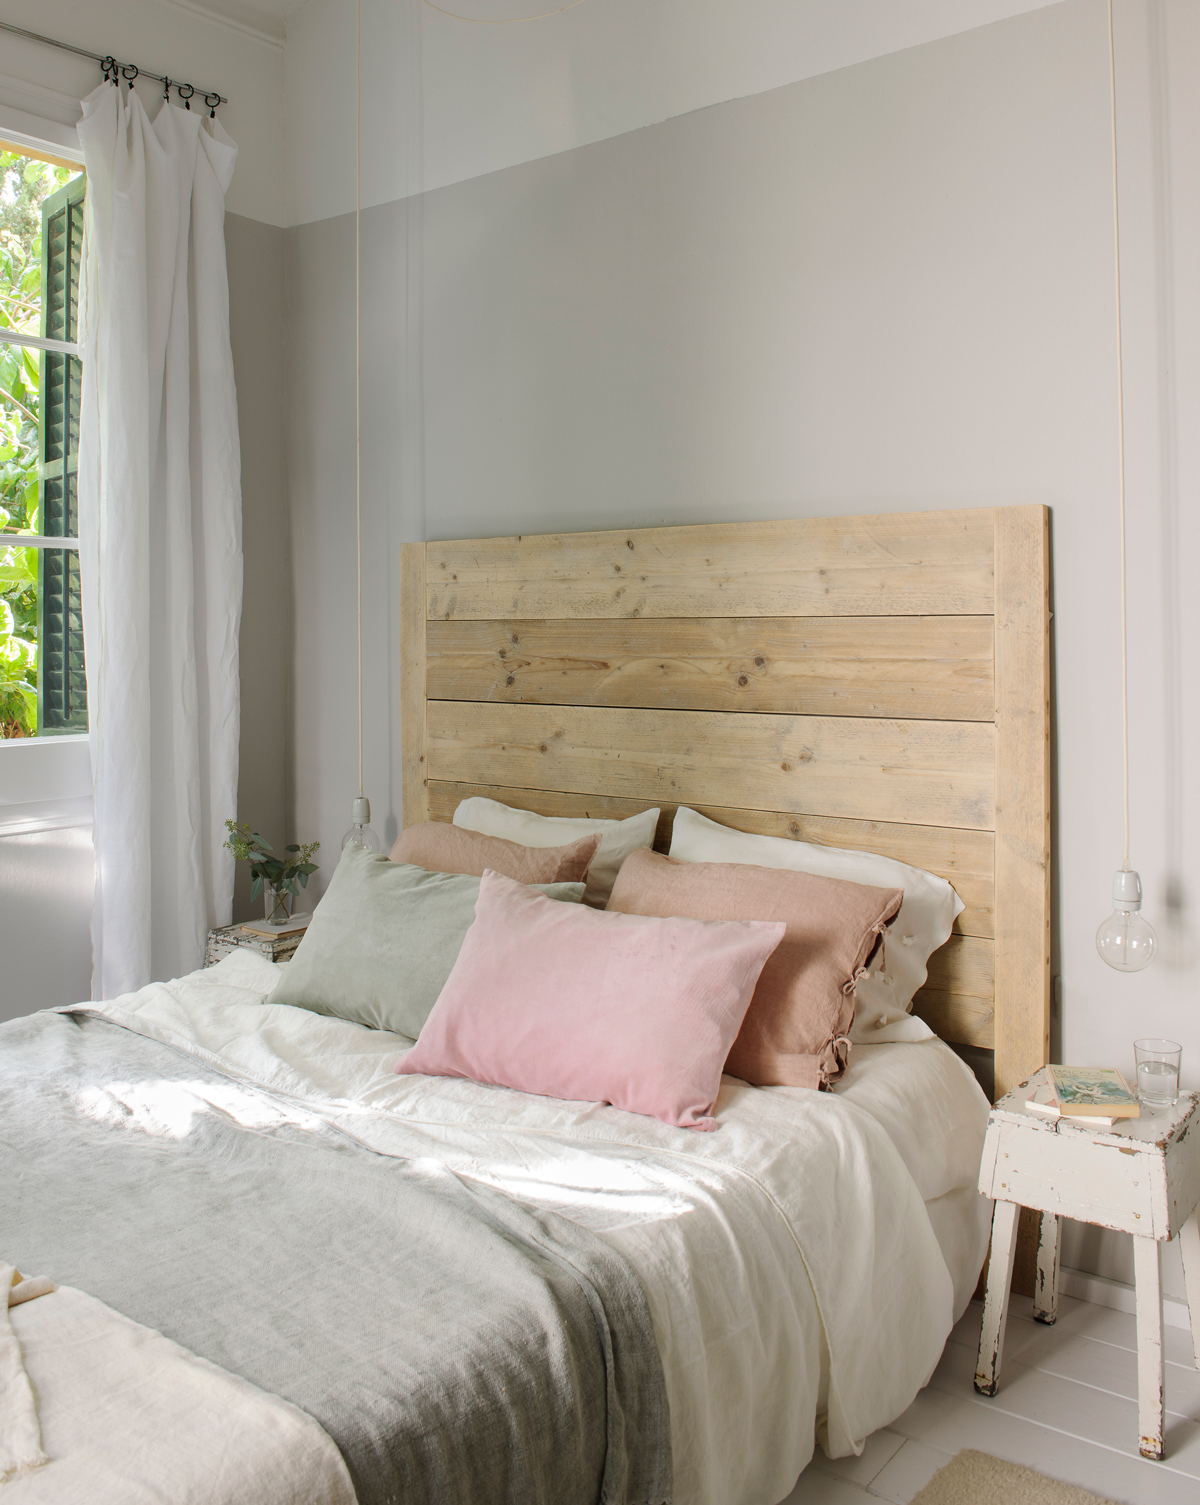 Dormitorio decorado en tonos neutros con cabecero de madera.